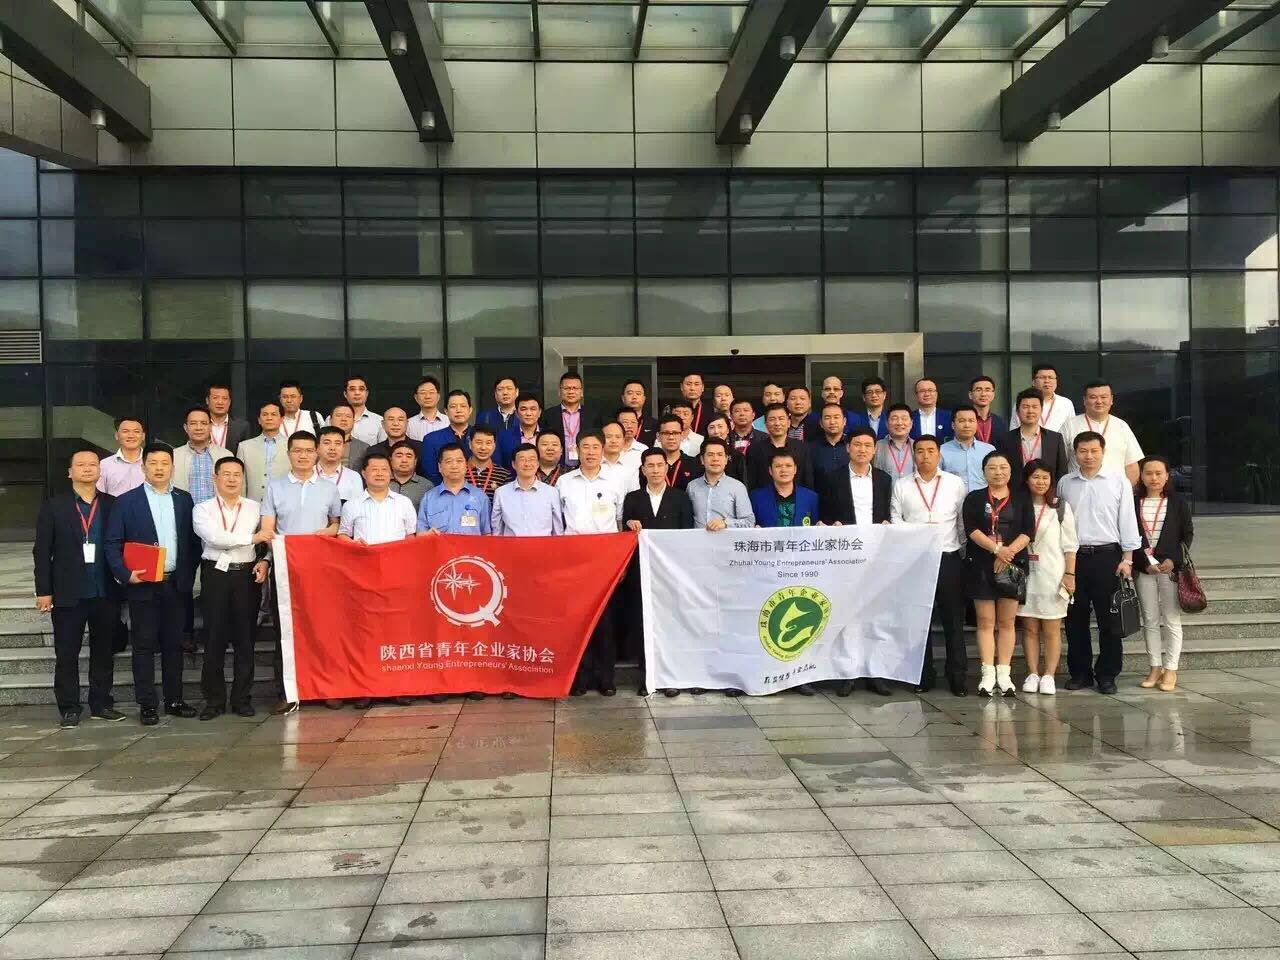 共青团陕西省委、陕西省青年企业家协会广东学习交流活动最后一站——珠海。